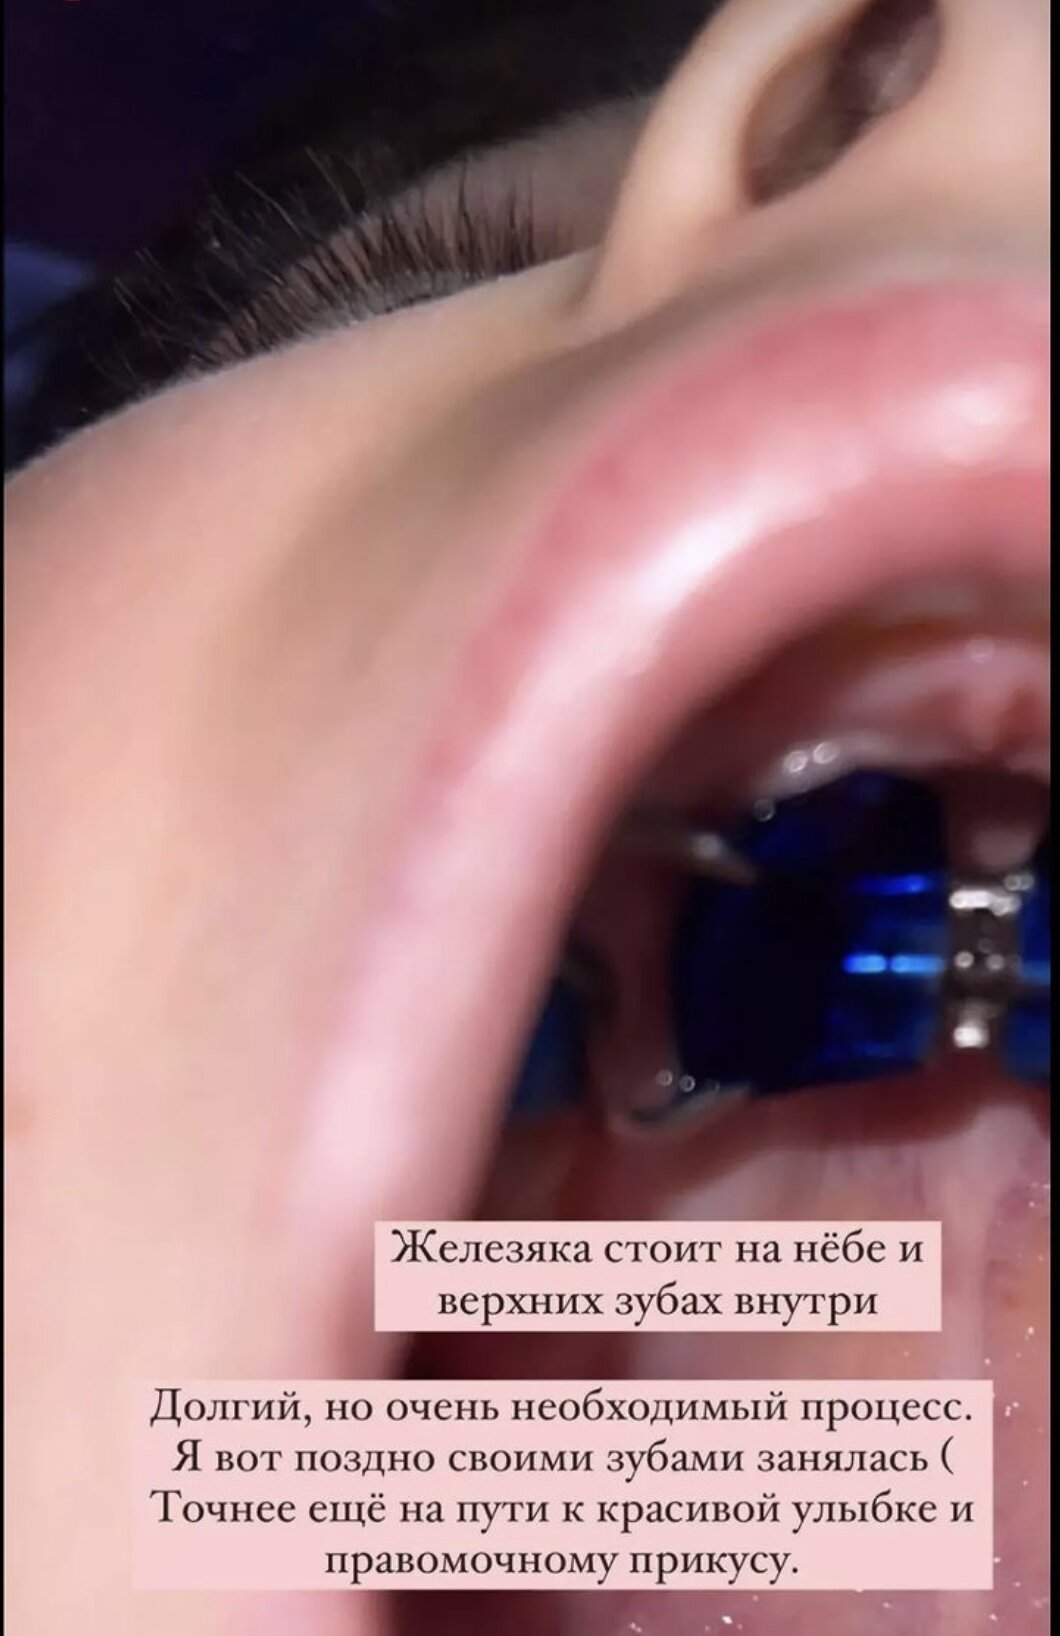 Алёна Водонаева показала содержимое своего рта и носа